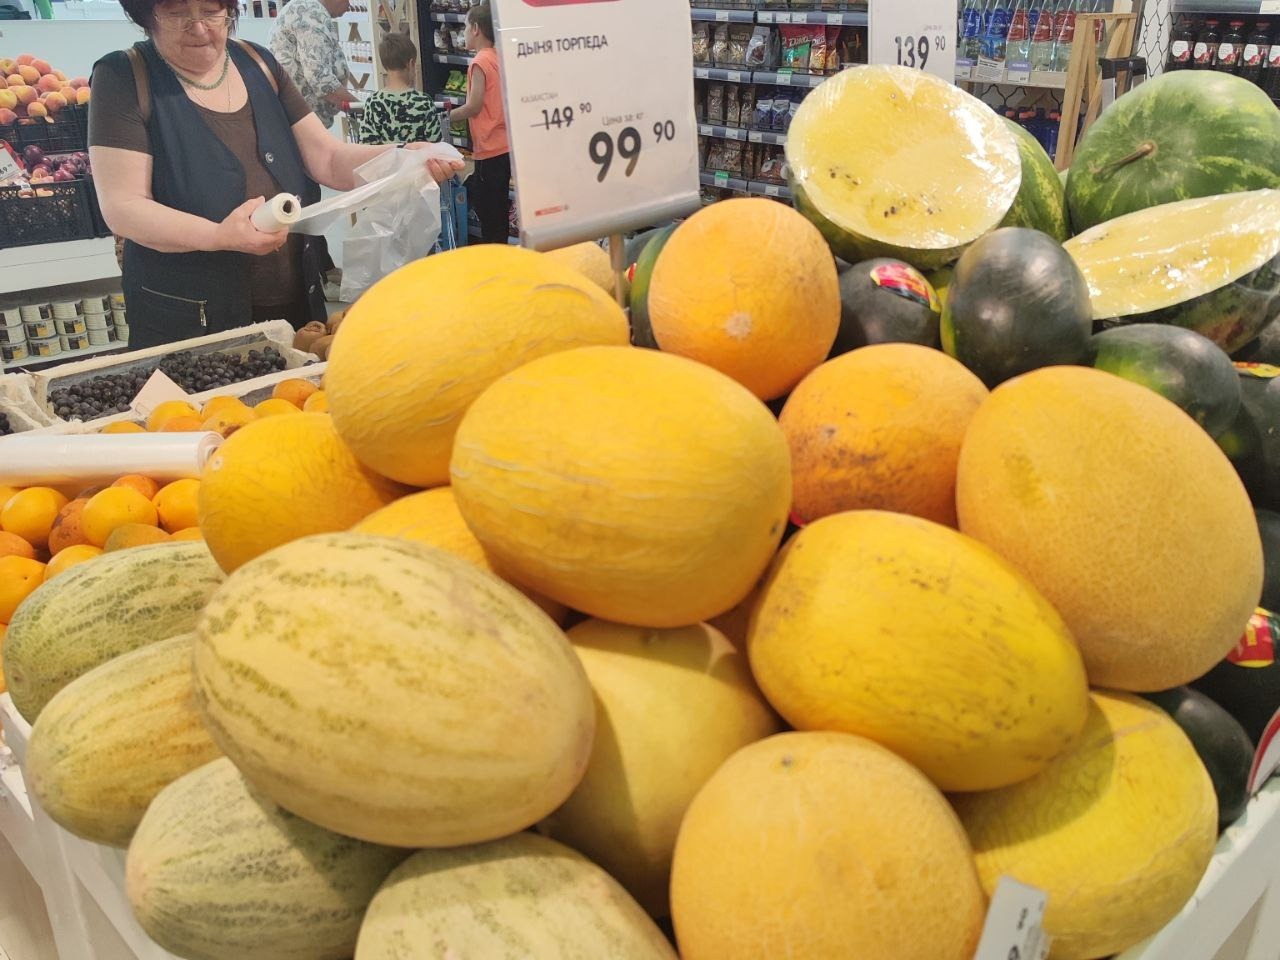 Сколько стоят овощи и фрукты в магазинах Нижнего Новгорода